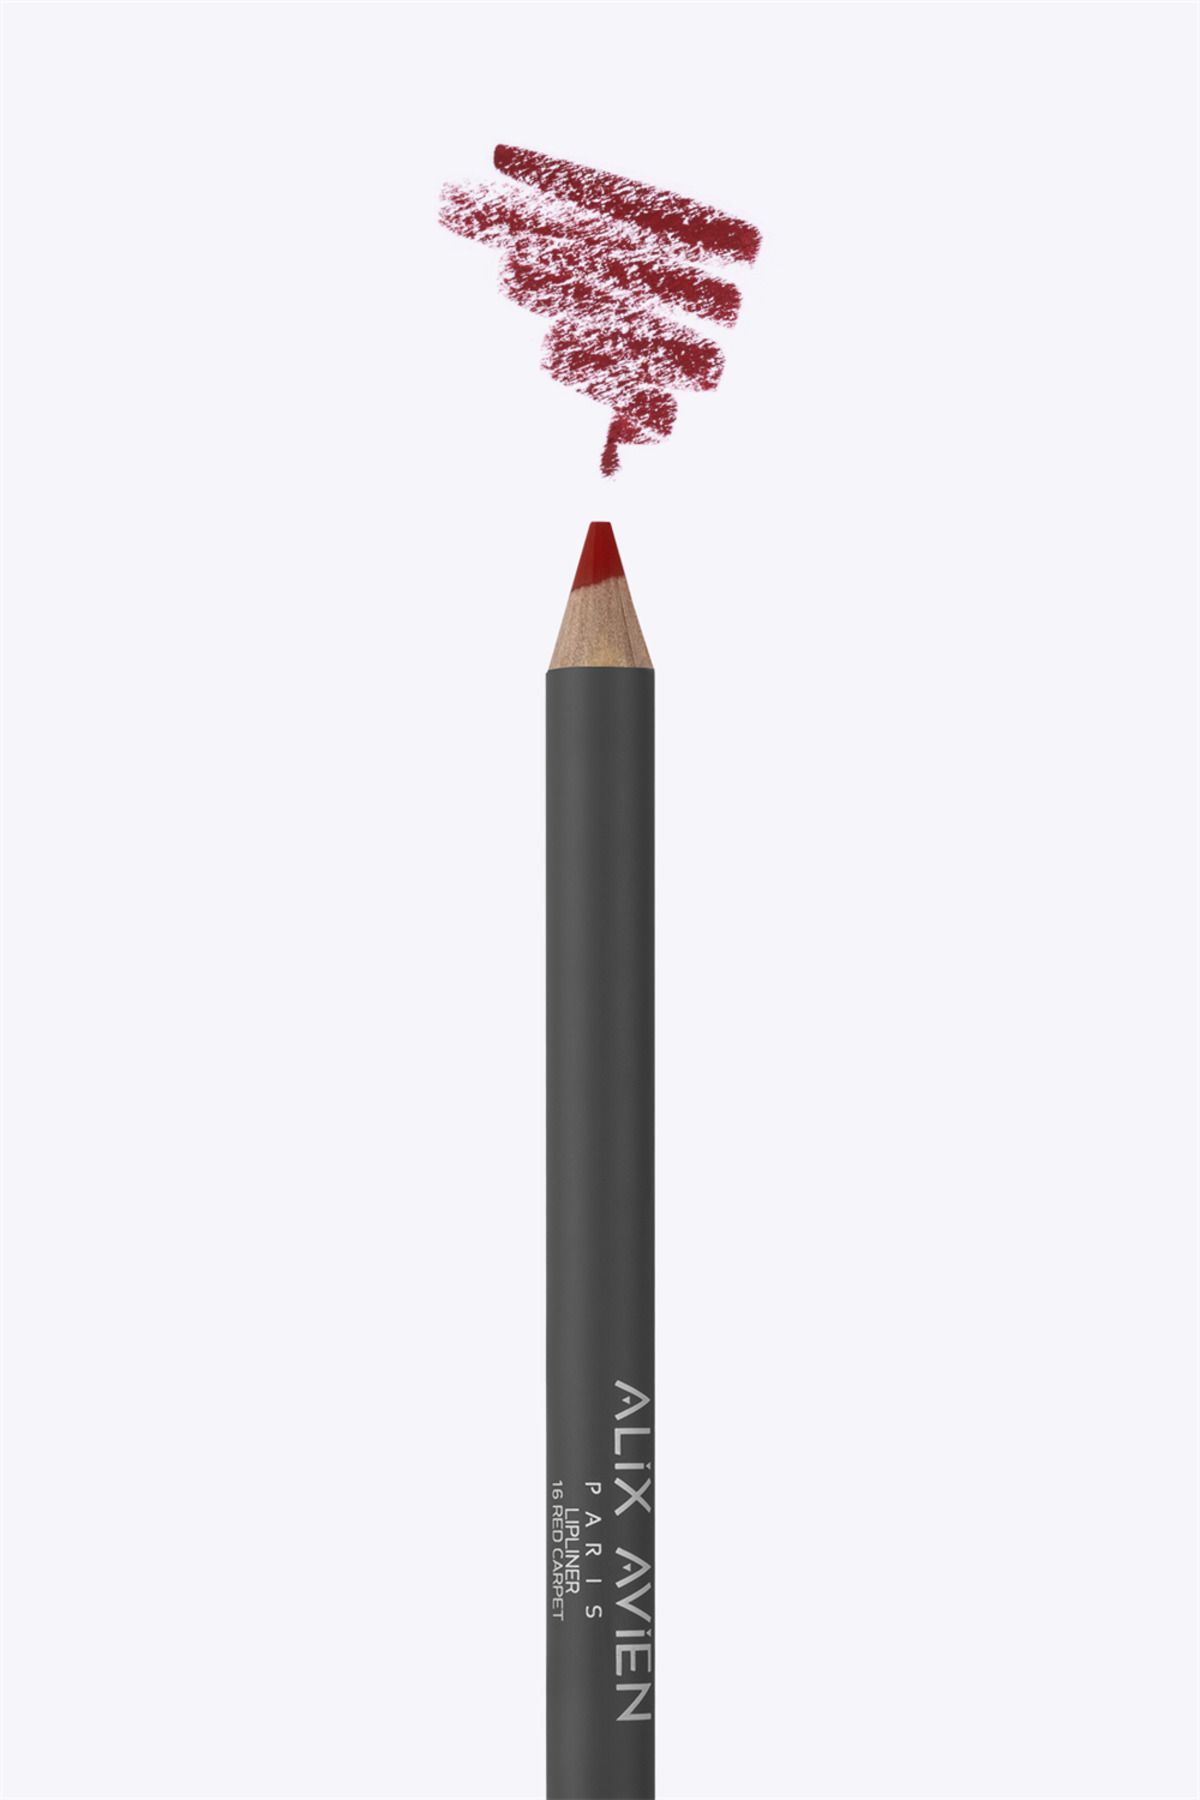 Alix Avien Dudak Kalemi Lipliner Pencil 16 Red Carpet - Dağılma Yapmayan 6 Saate Kadar Kalıcı Etki